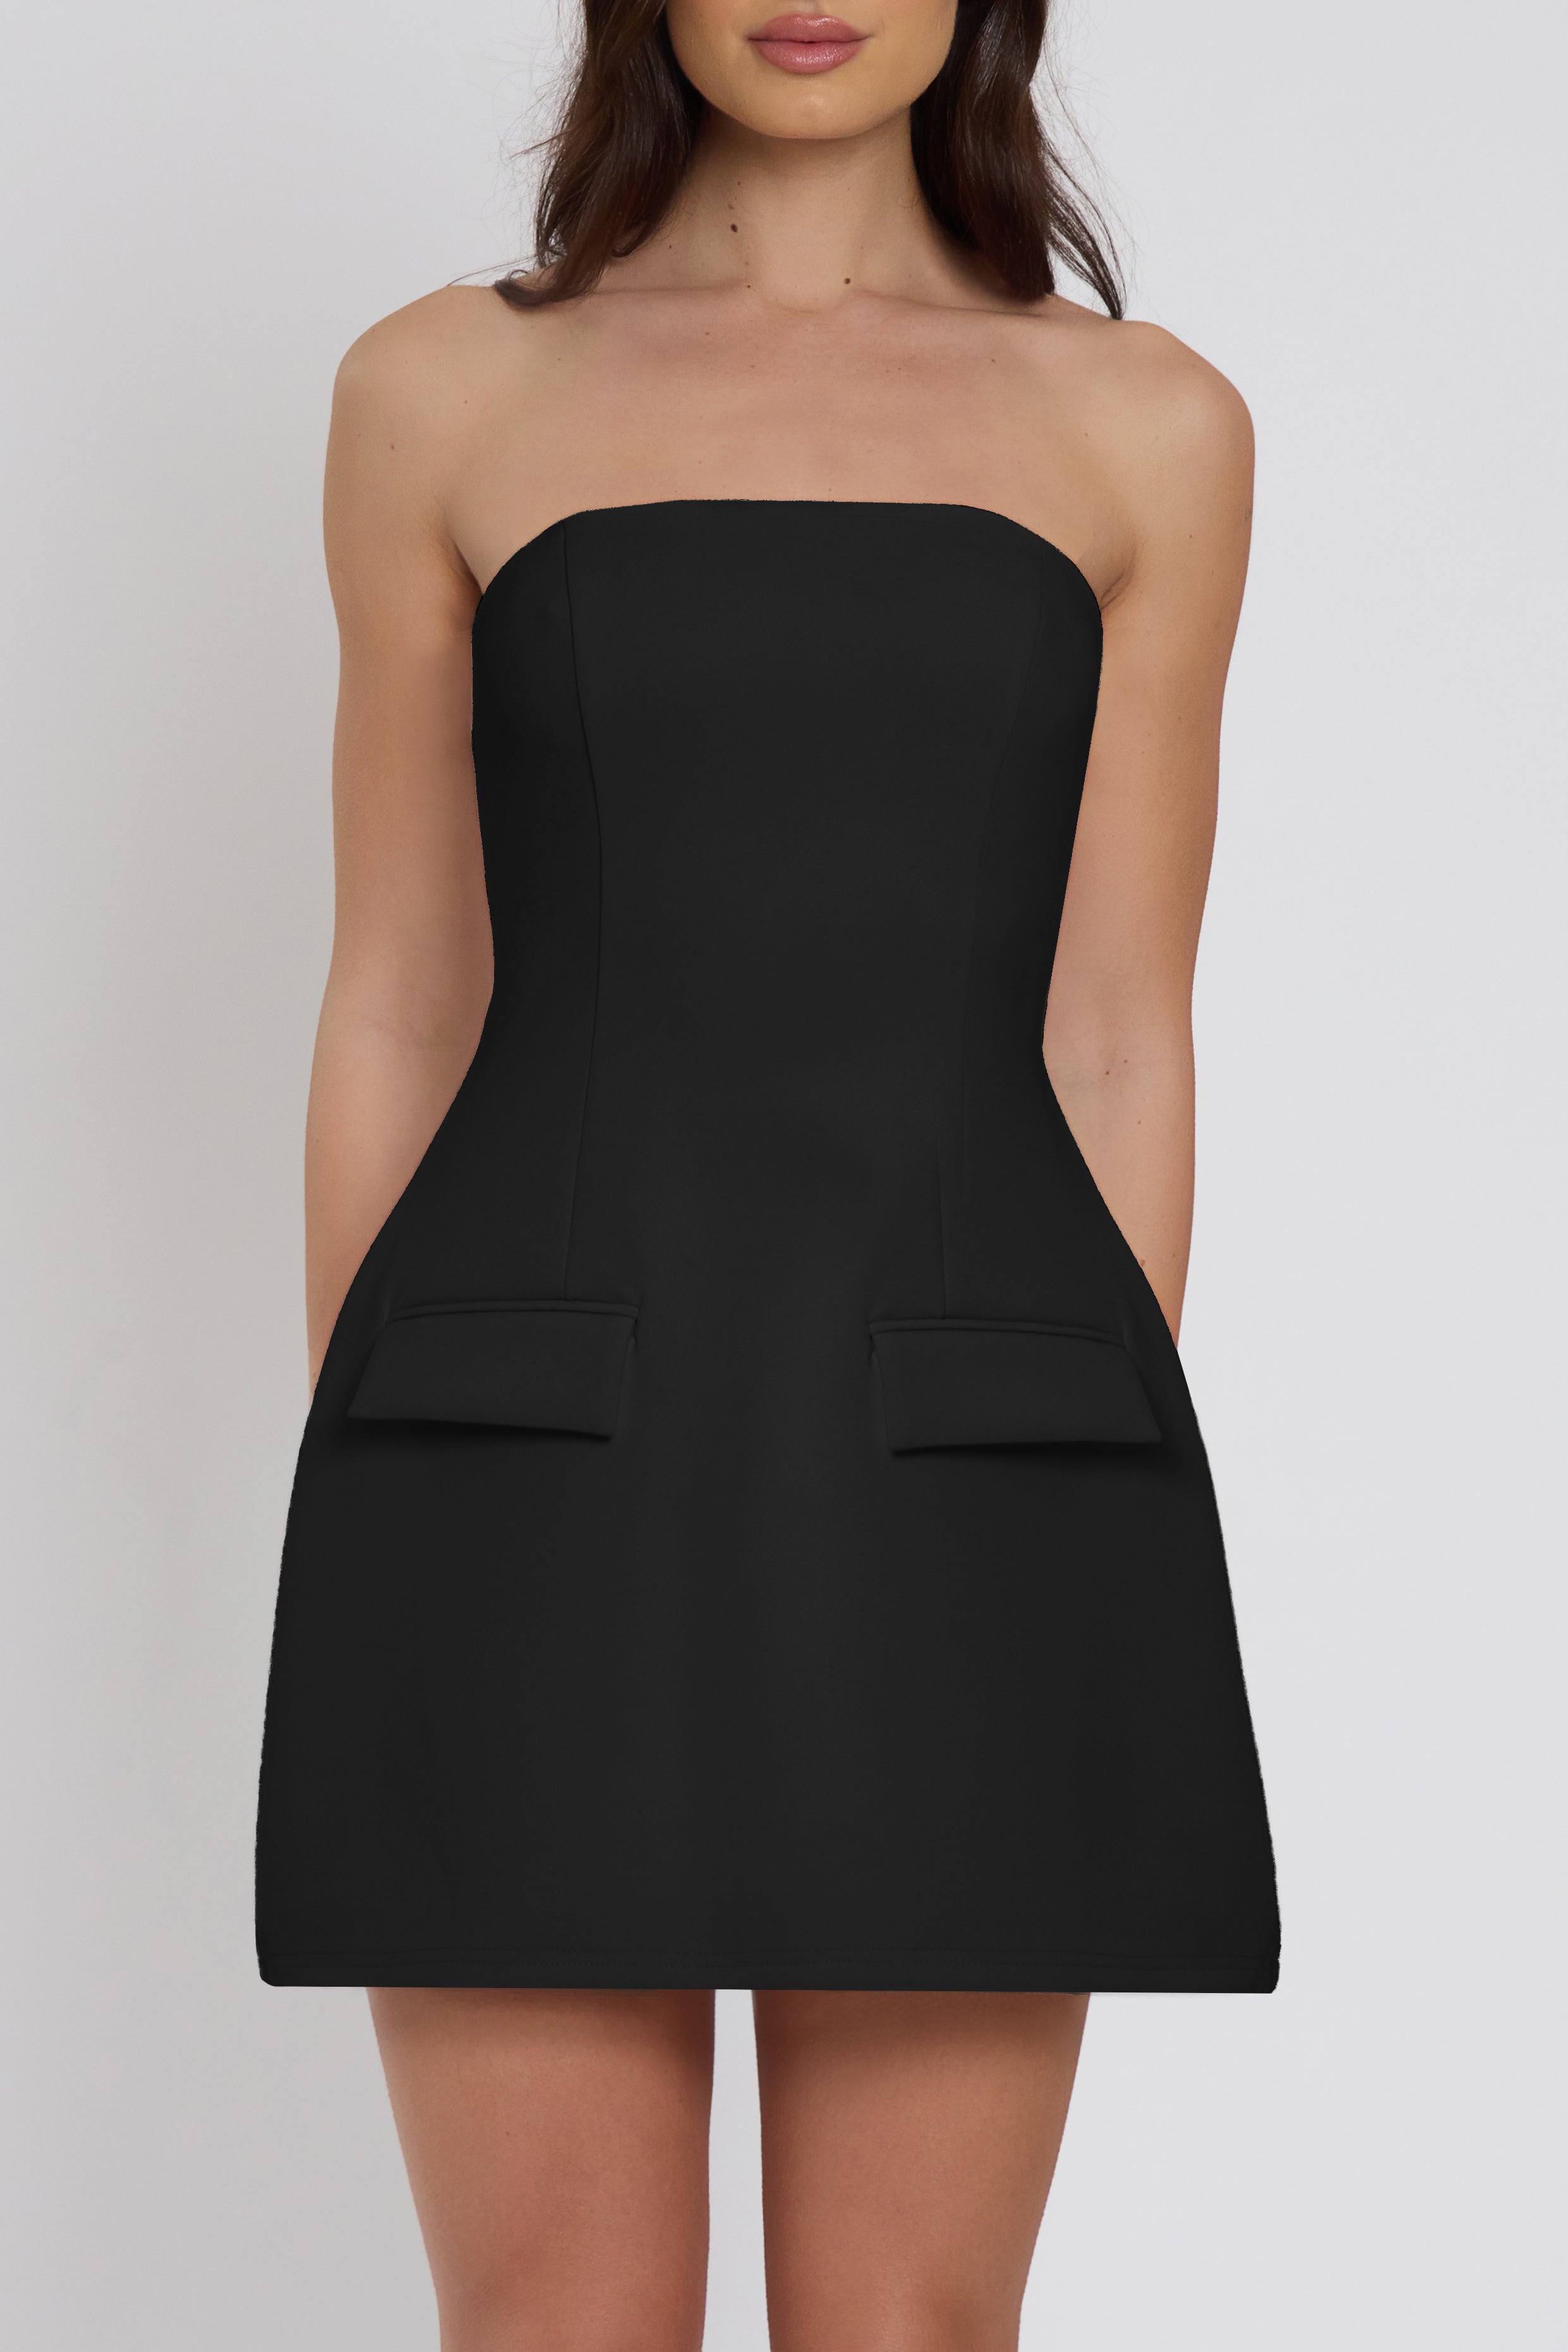 Solene Strapless Pocket Mini Dress - Black.